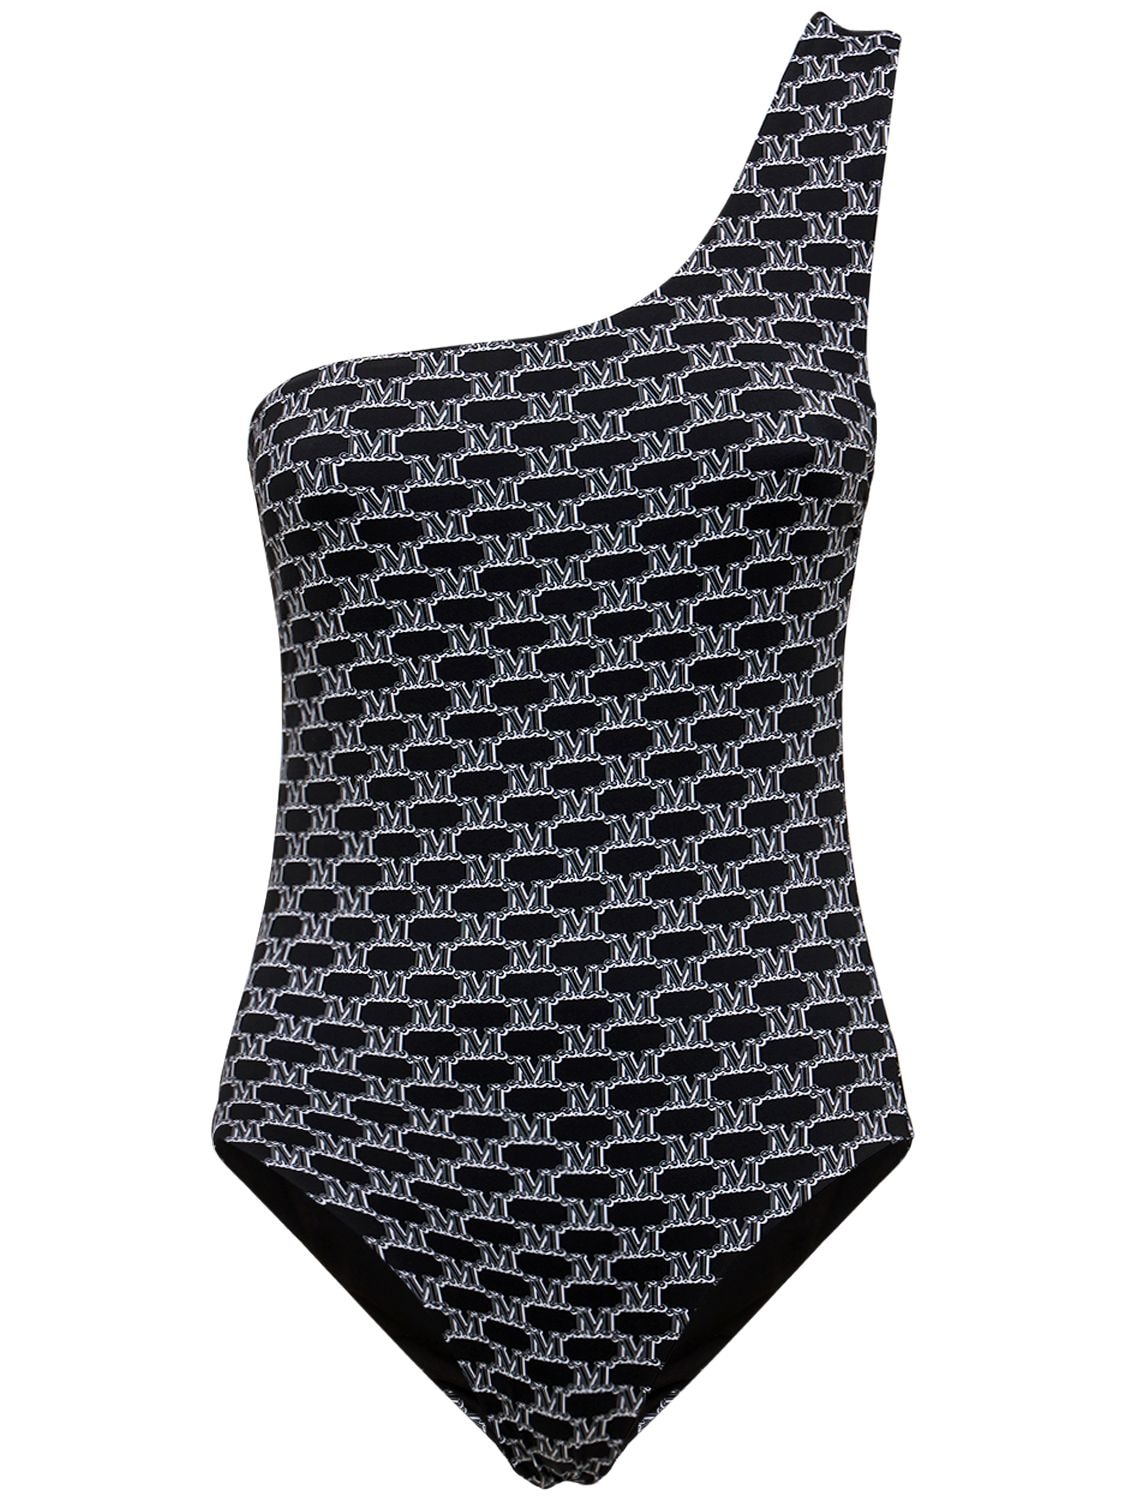 Max Mara - Printed nylon one piece swimsuit - Multi/Black | Luisaviaroma